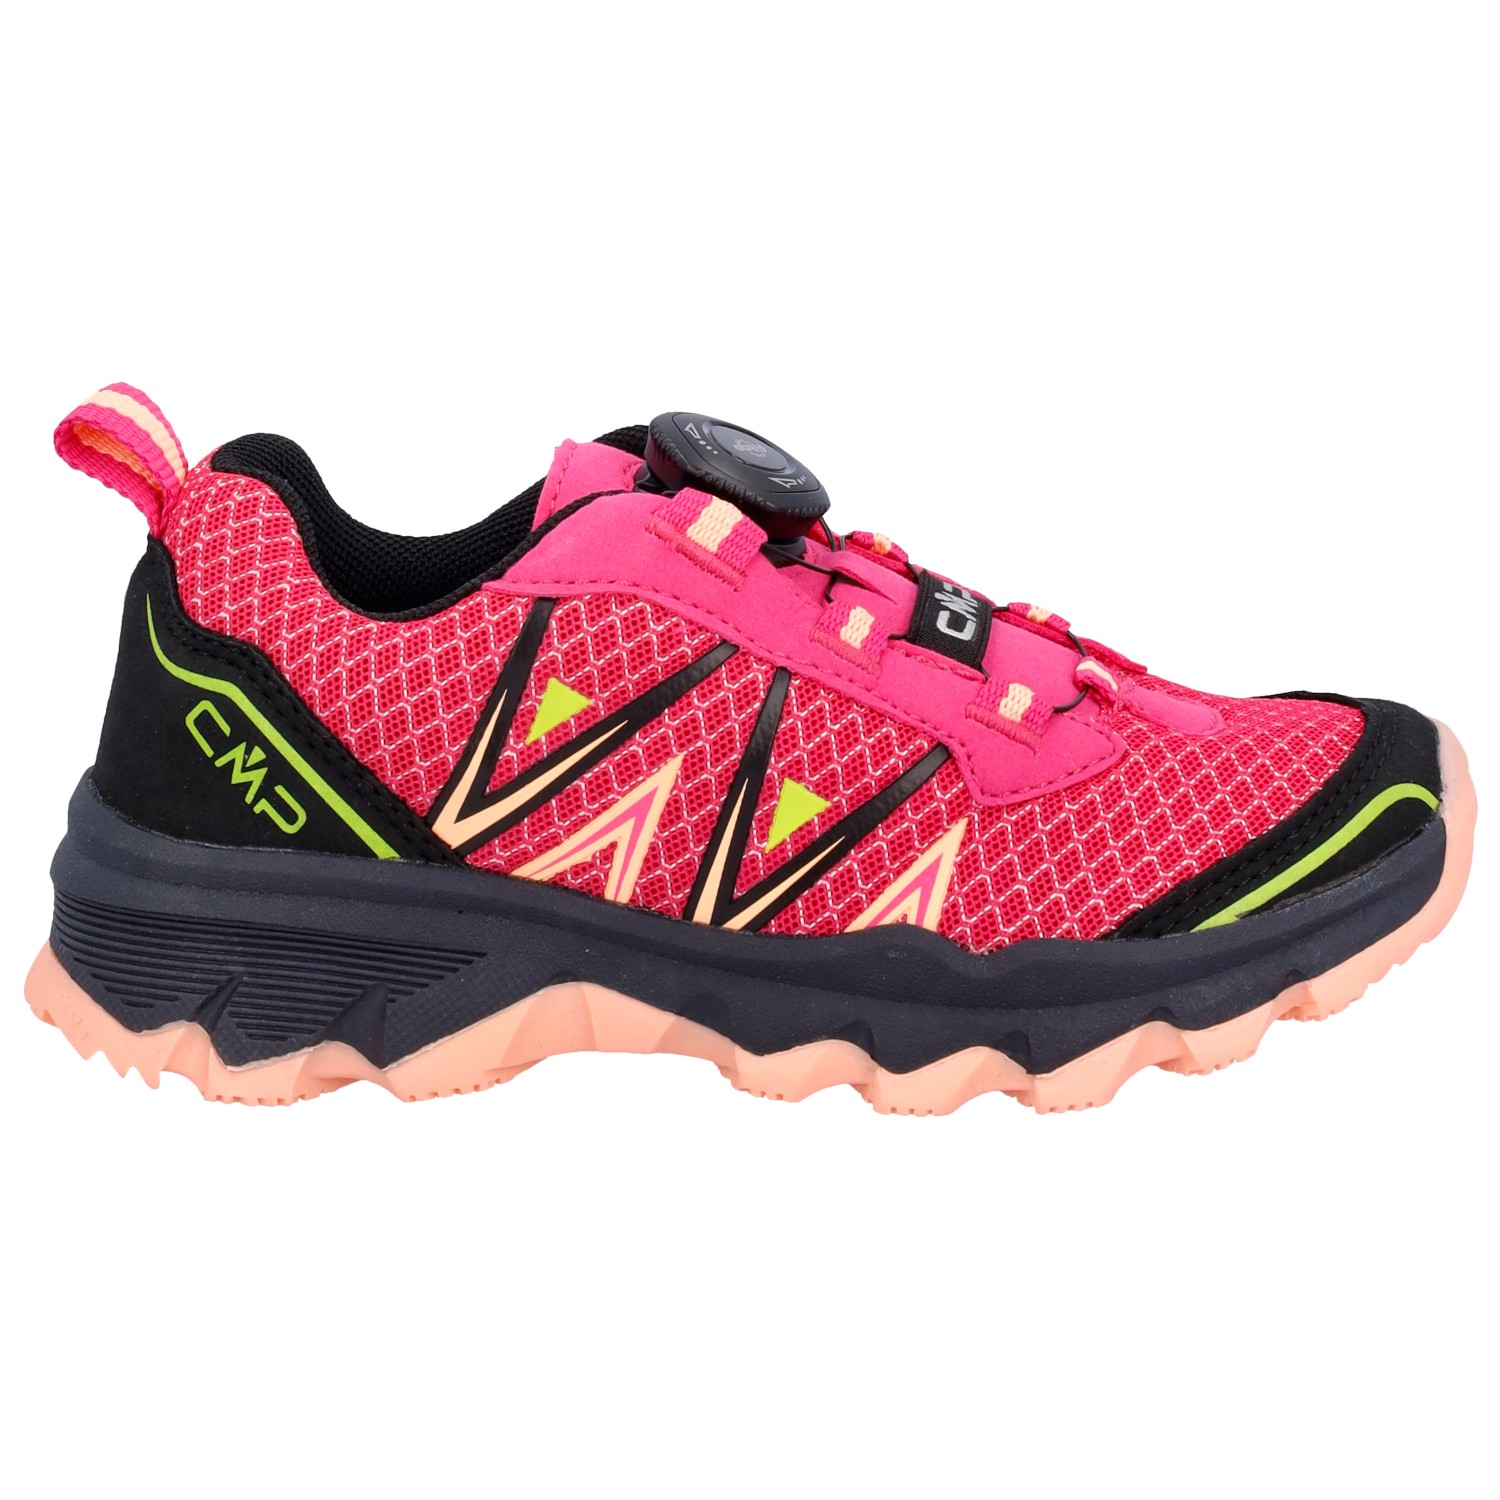 Мультиспортивная обувь Cmp Kid's Aksa Fitgo Fast Hiking Shoes, цвет Fuxia/Sunrise кроссовки add 390703 fuxia розовый 34